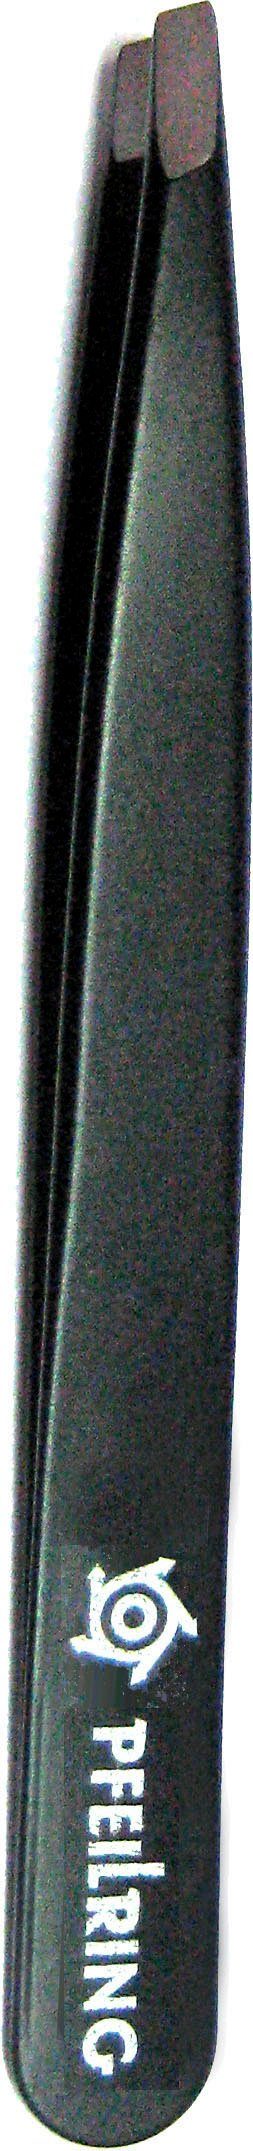 rostfrei 9,7cm, schwarz Pinzette, PFEILRING